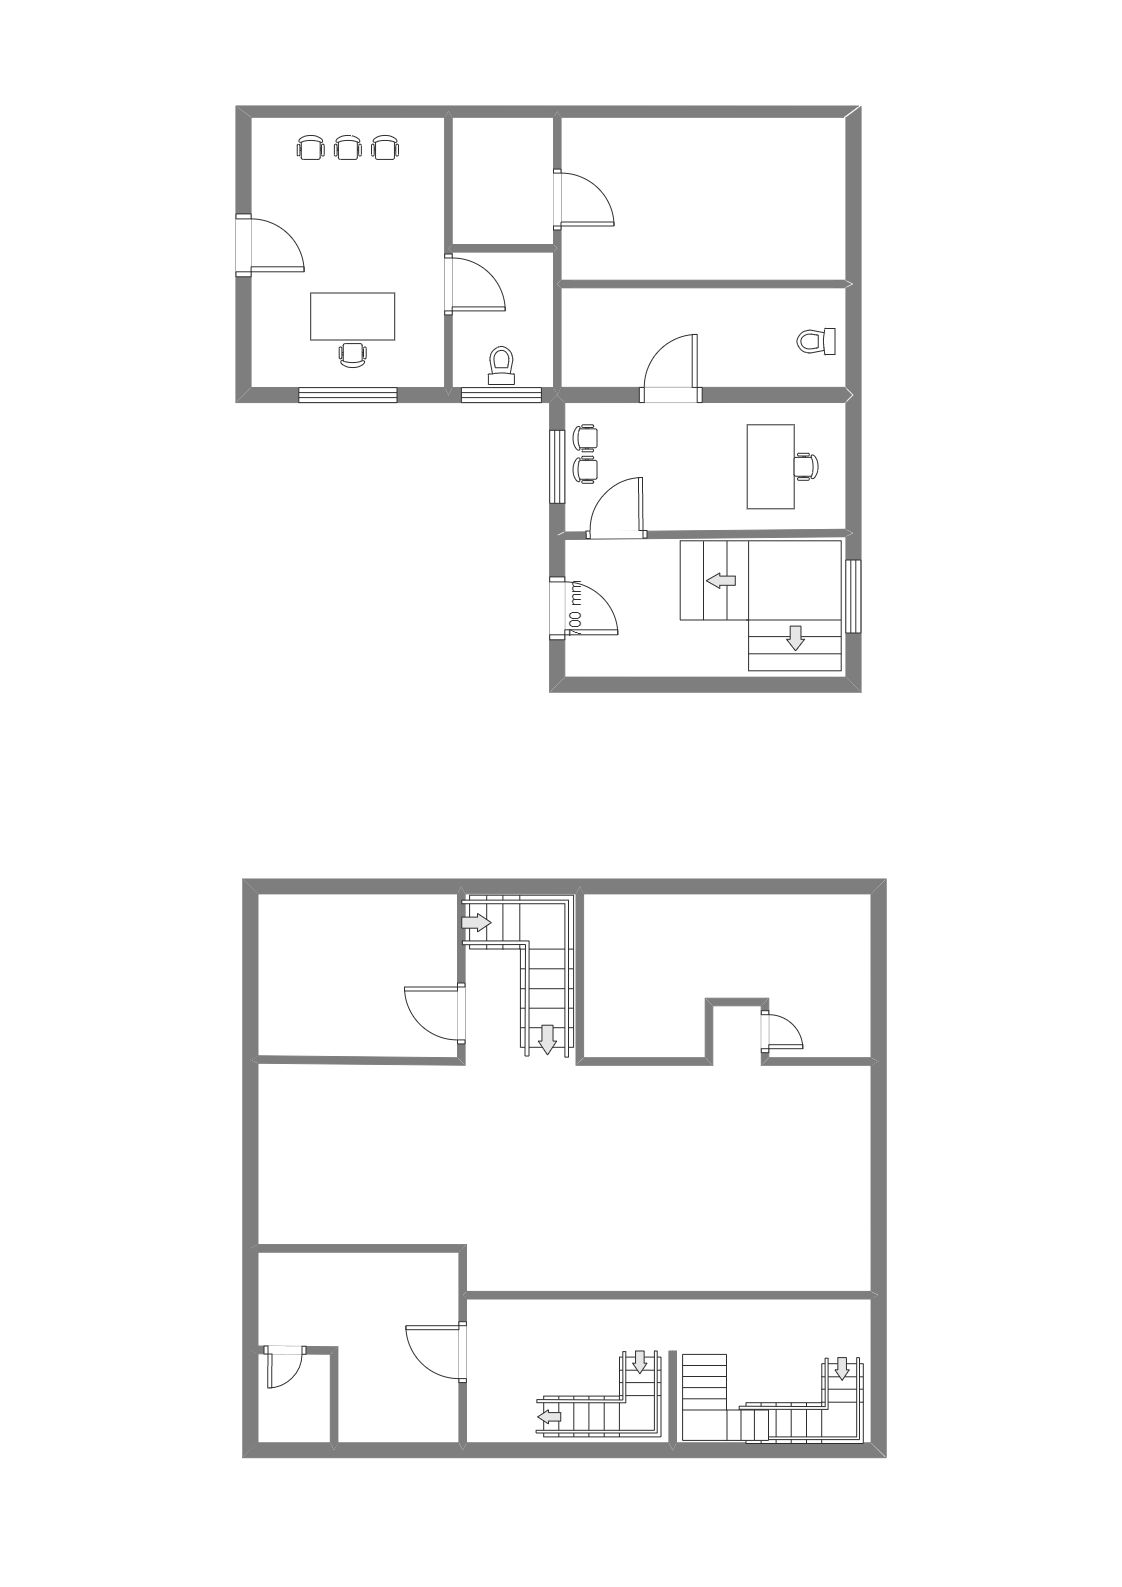 Simple Two Floor Plan